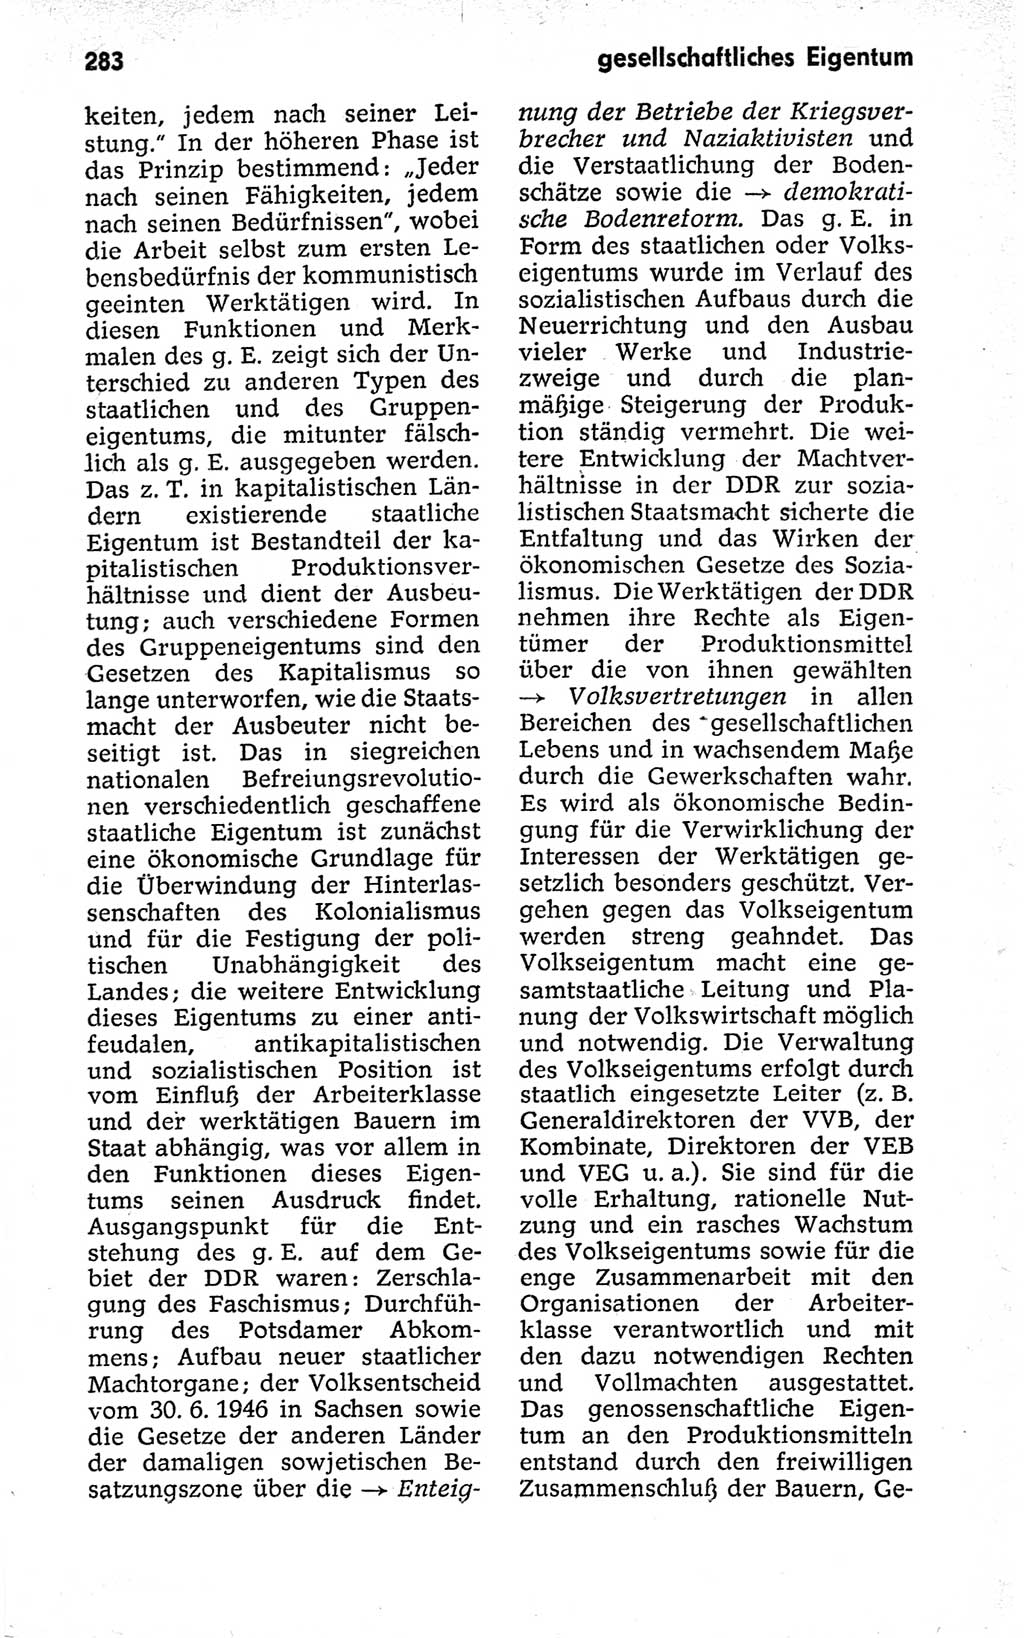 Kleines politisches Wörterbuch [Deutsche Demokratische Republik (DDR)] 1973, Seite 283 (Kl. pol. Wb. DDR 1973, S. 283)